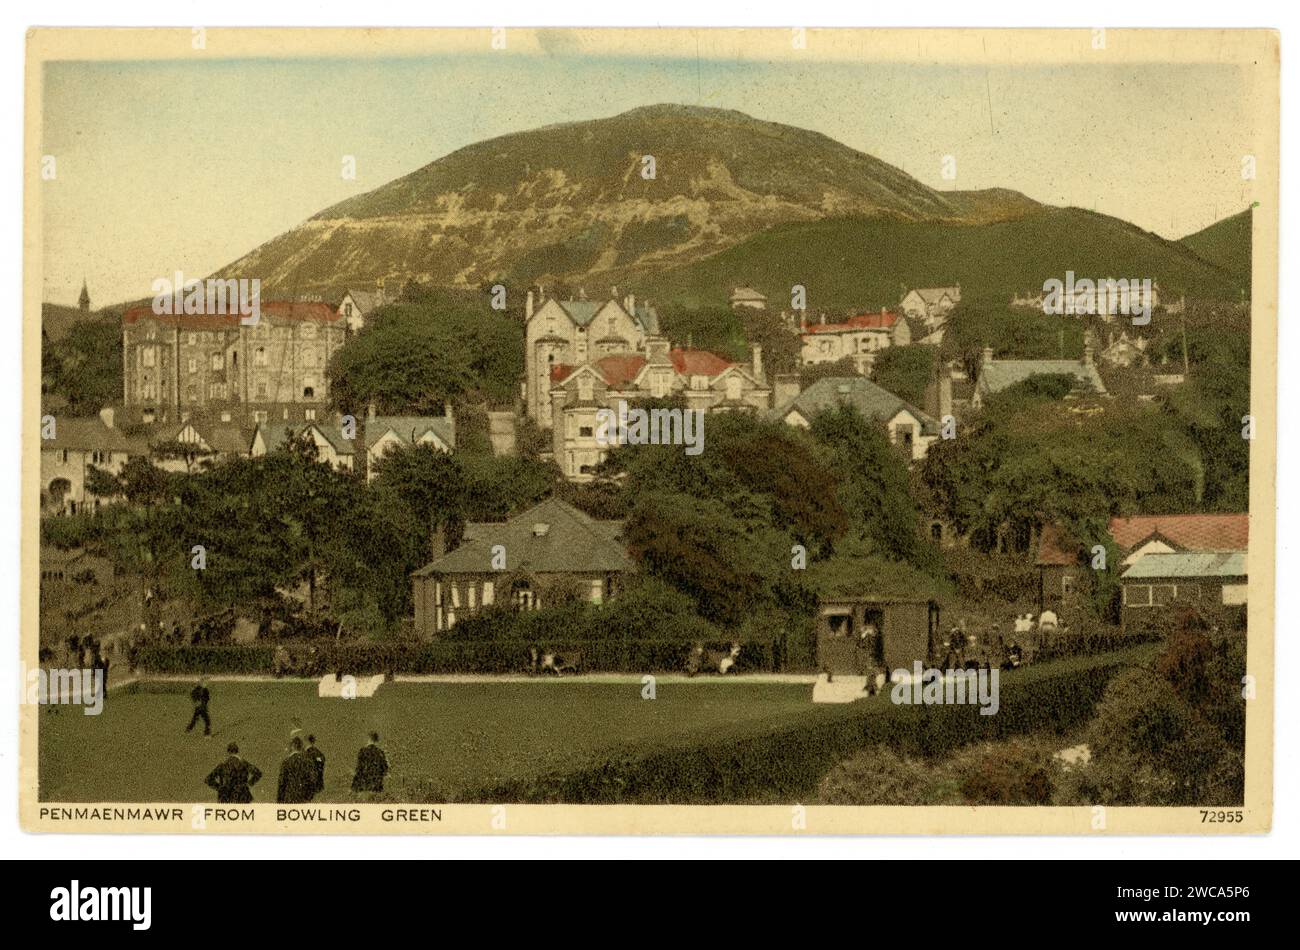 Carte postale originale de l'ère édouardienne de Penmaenmawr, du bowling green, côte nord du pays de Galles entre Conwy et Llanfairfechan, comté de Caernarfonshire, c'était une importante ville de carrière. Circa 1905 / 1910. Banque D'Images